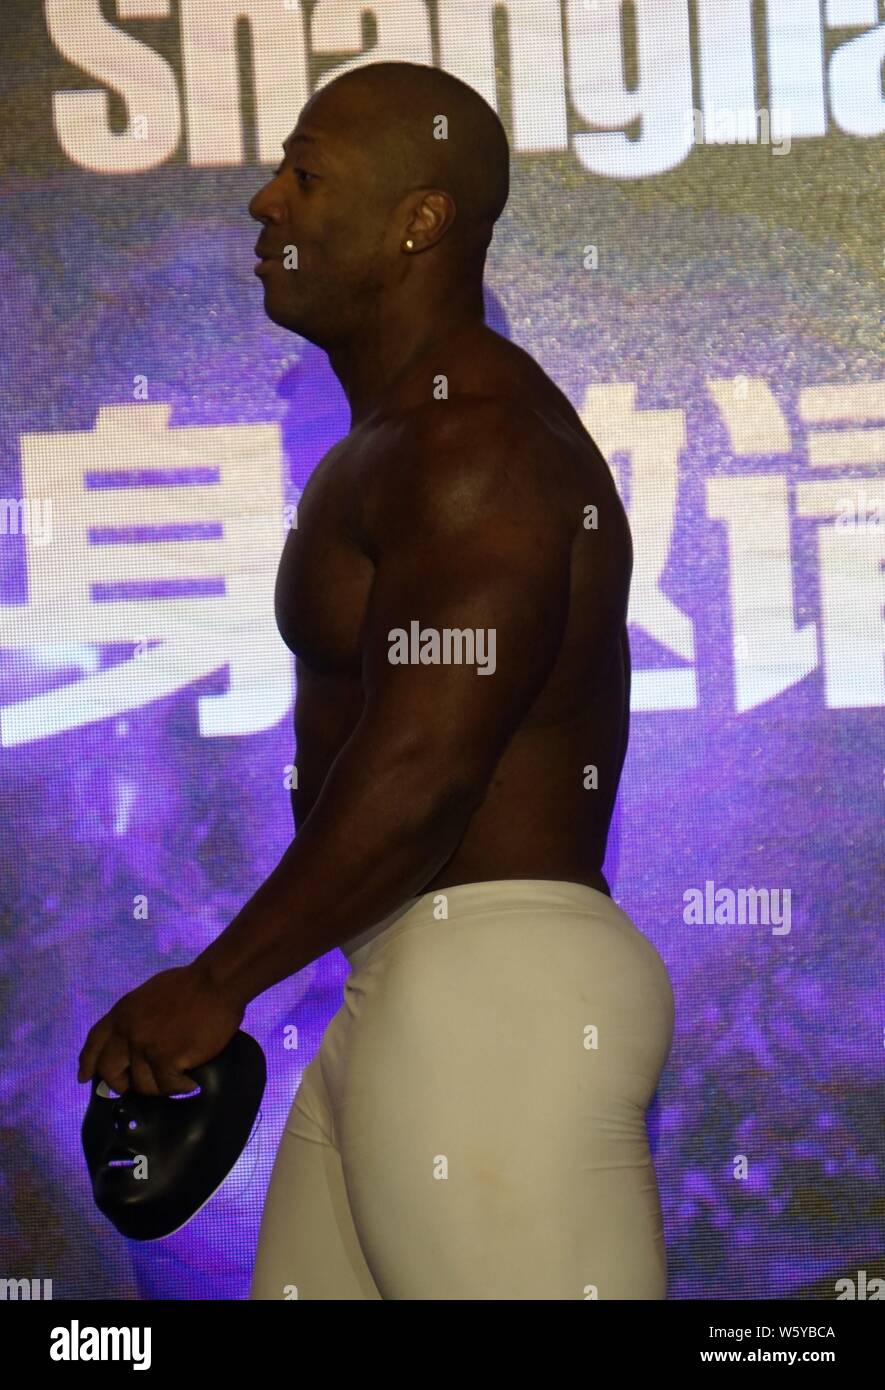 Jamaican-American IFBB professional Bodybuilder Shawn Rhoden wird dargestellt, während einer Bodybuilding Wettkampf in Shanghai, China, 13. November 2018. Stockfoto